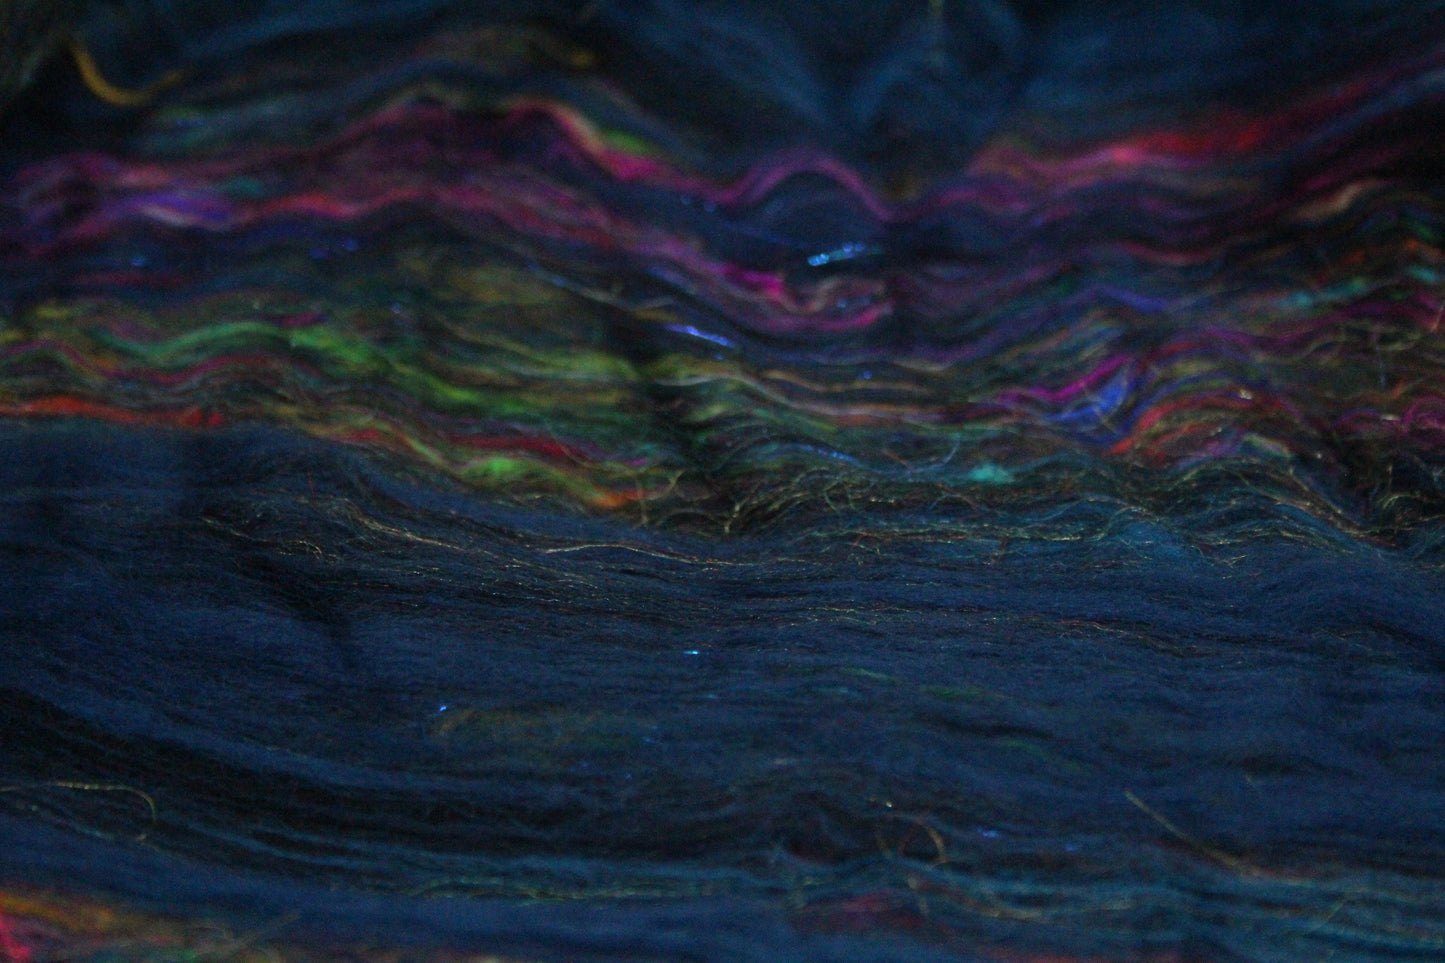 Merino Art Batt  - Blue Black  - 108 grams 3.8 oz - Wool for felting, spinning and weaving